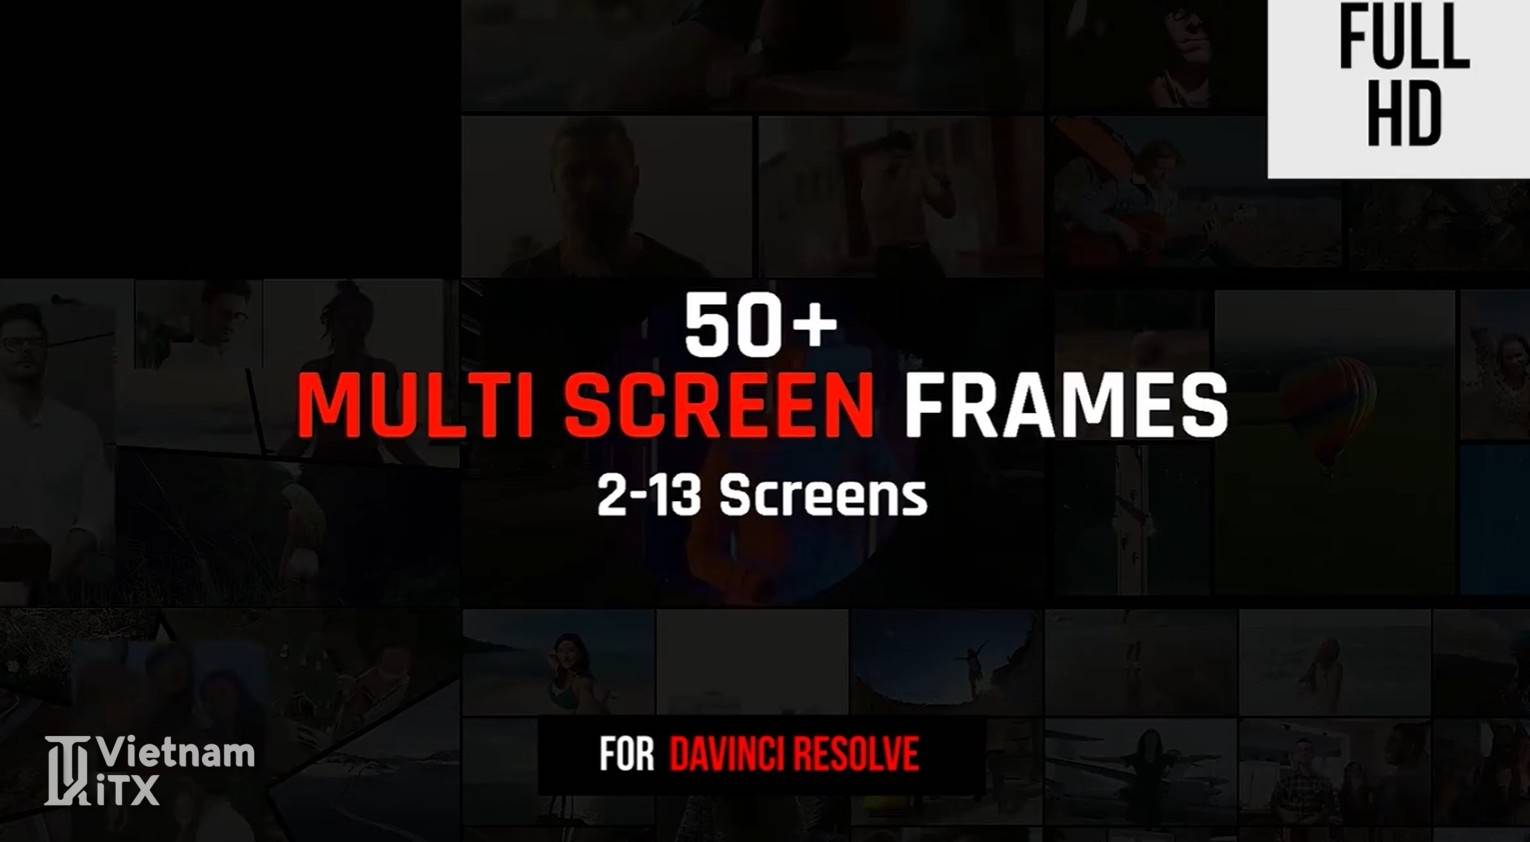 Multi Screen Frames Pack gói tổng hợp hiệu ứng chuyển cảnh free hướng dẫn cài đặt và download.jpg